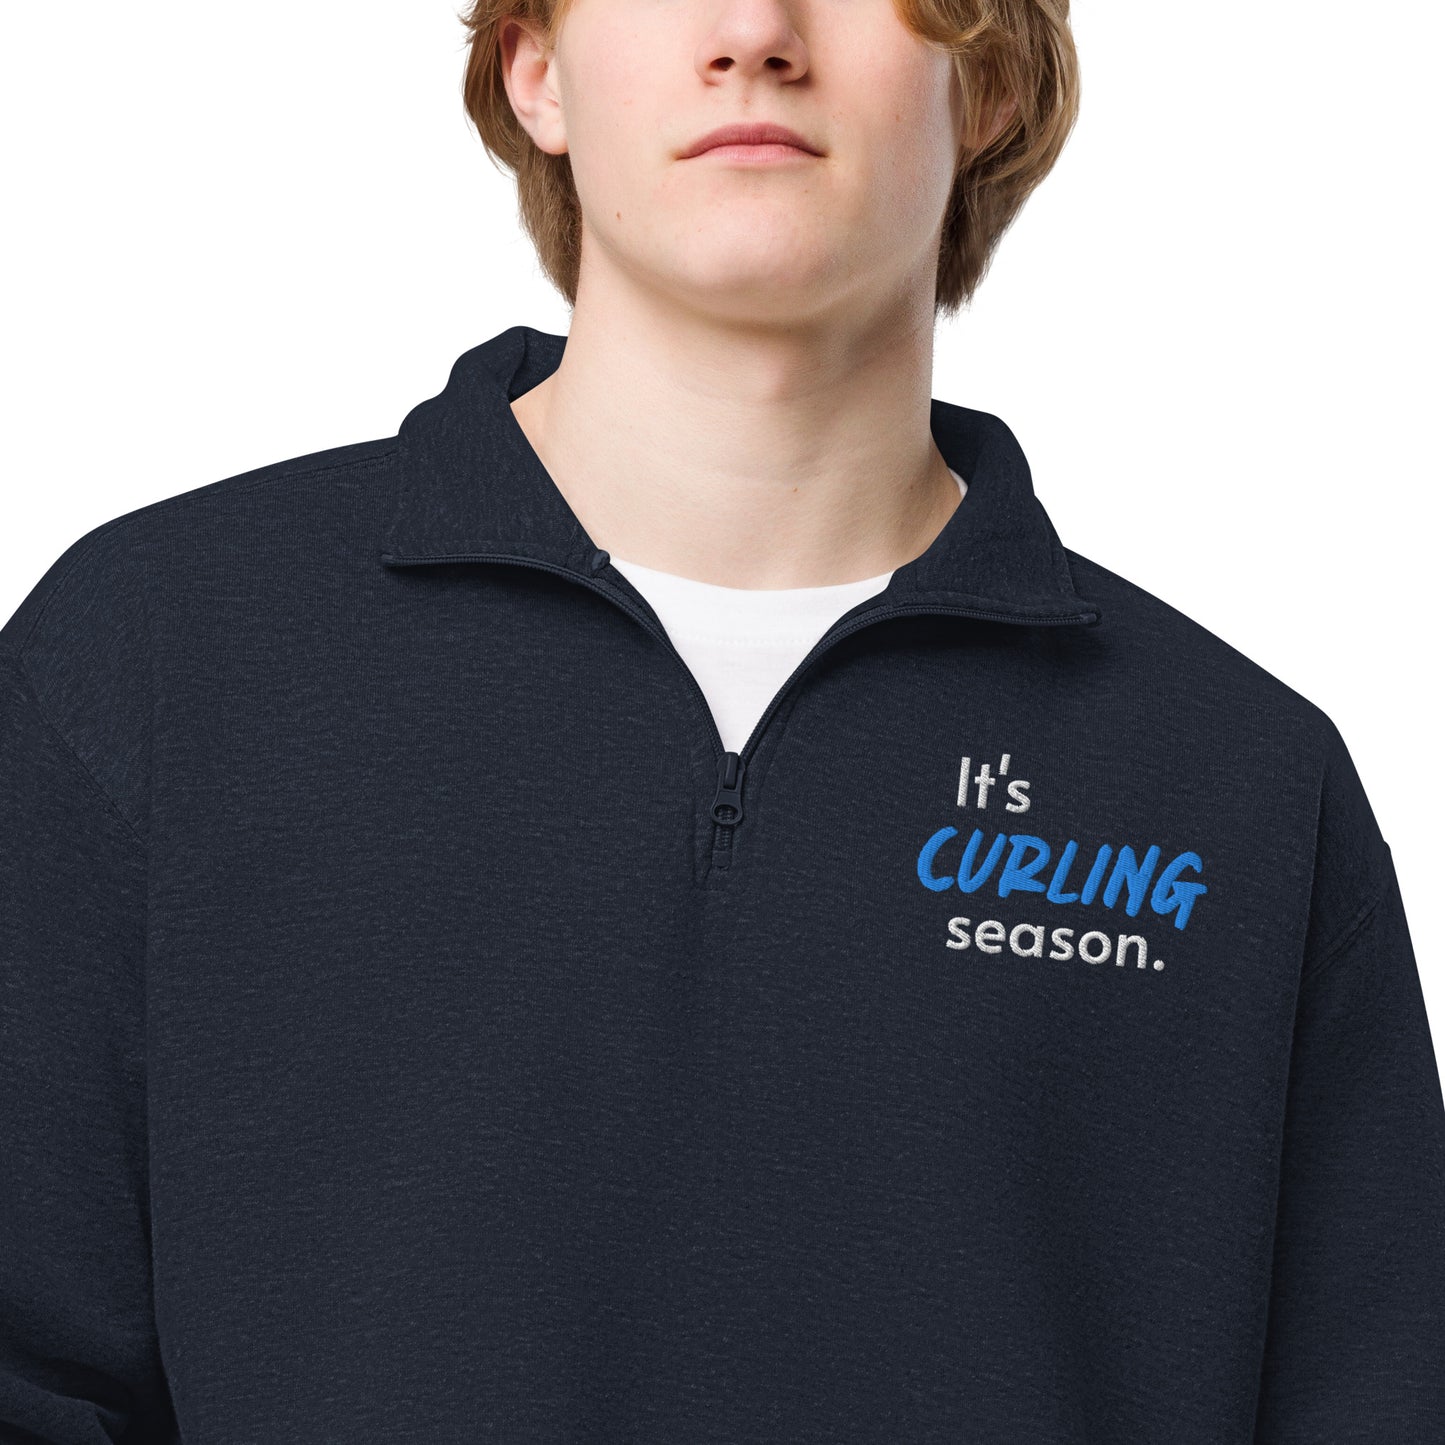 It's curling season fleece quarter zip pullover